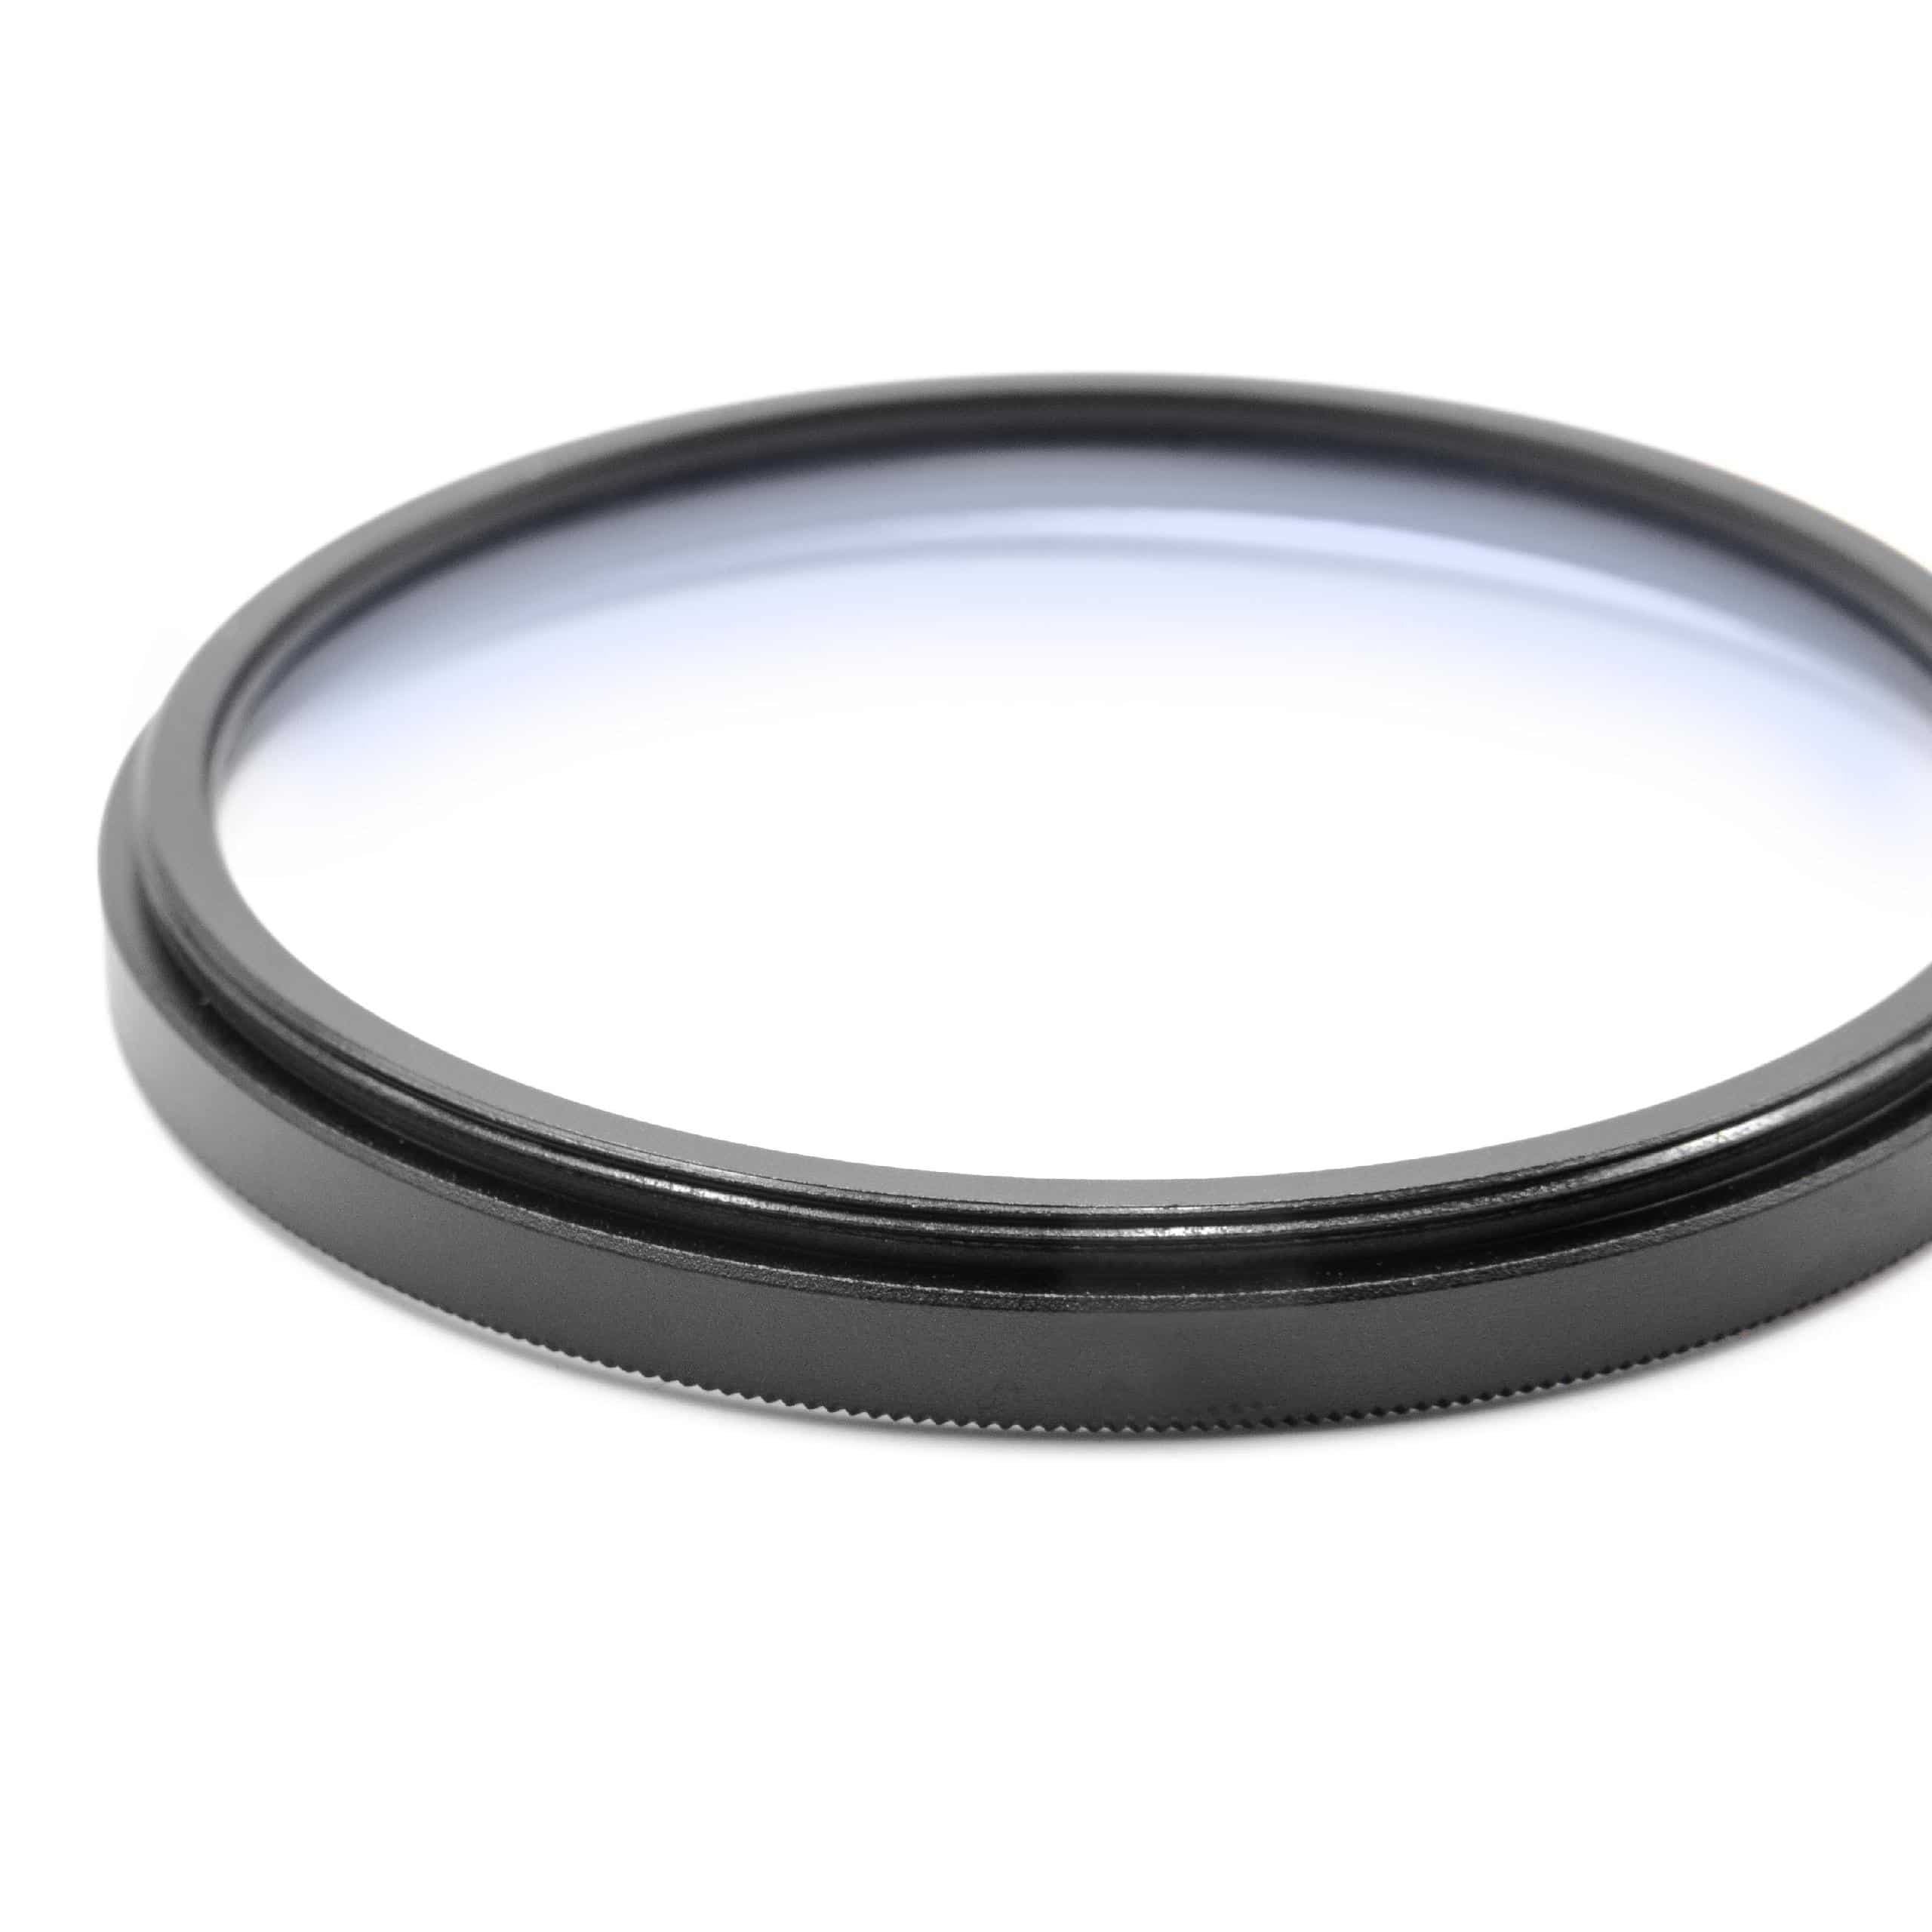 Filtre soft pour objectif d'appareil photo de diamètre 58 mm - Filtre doux